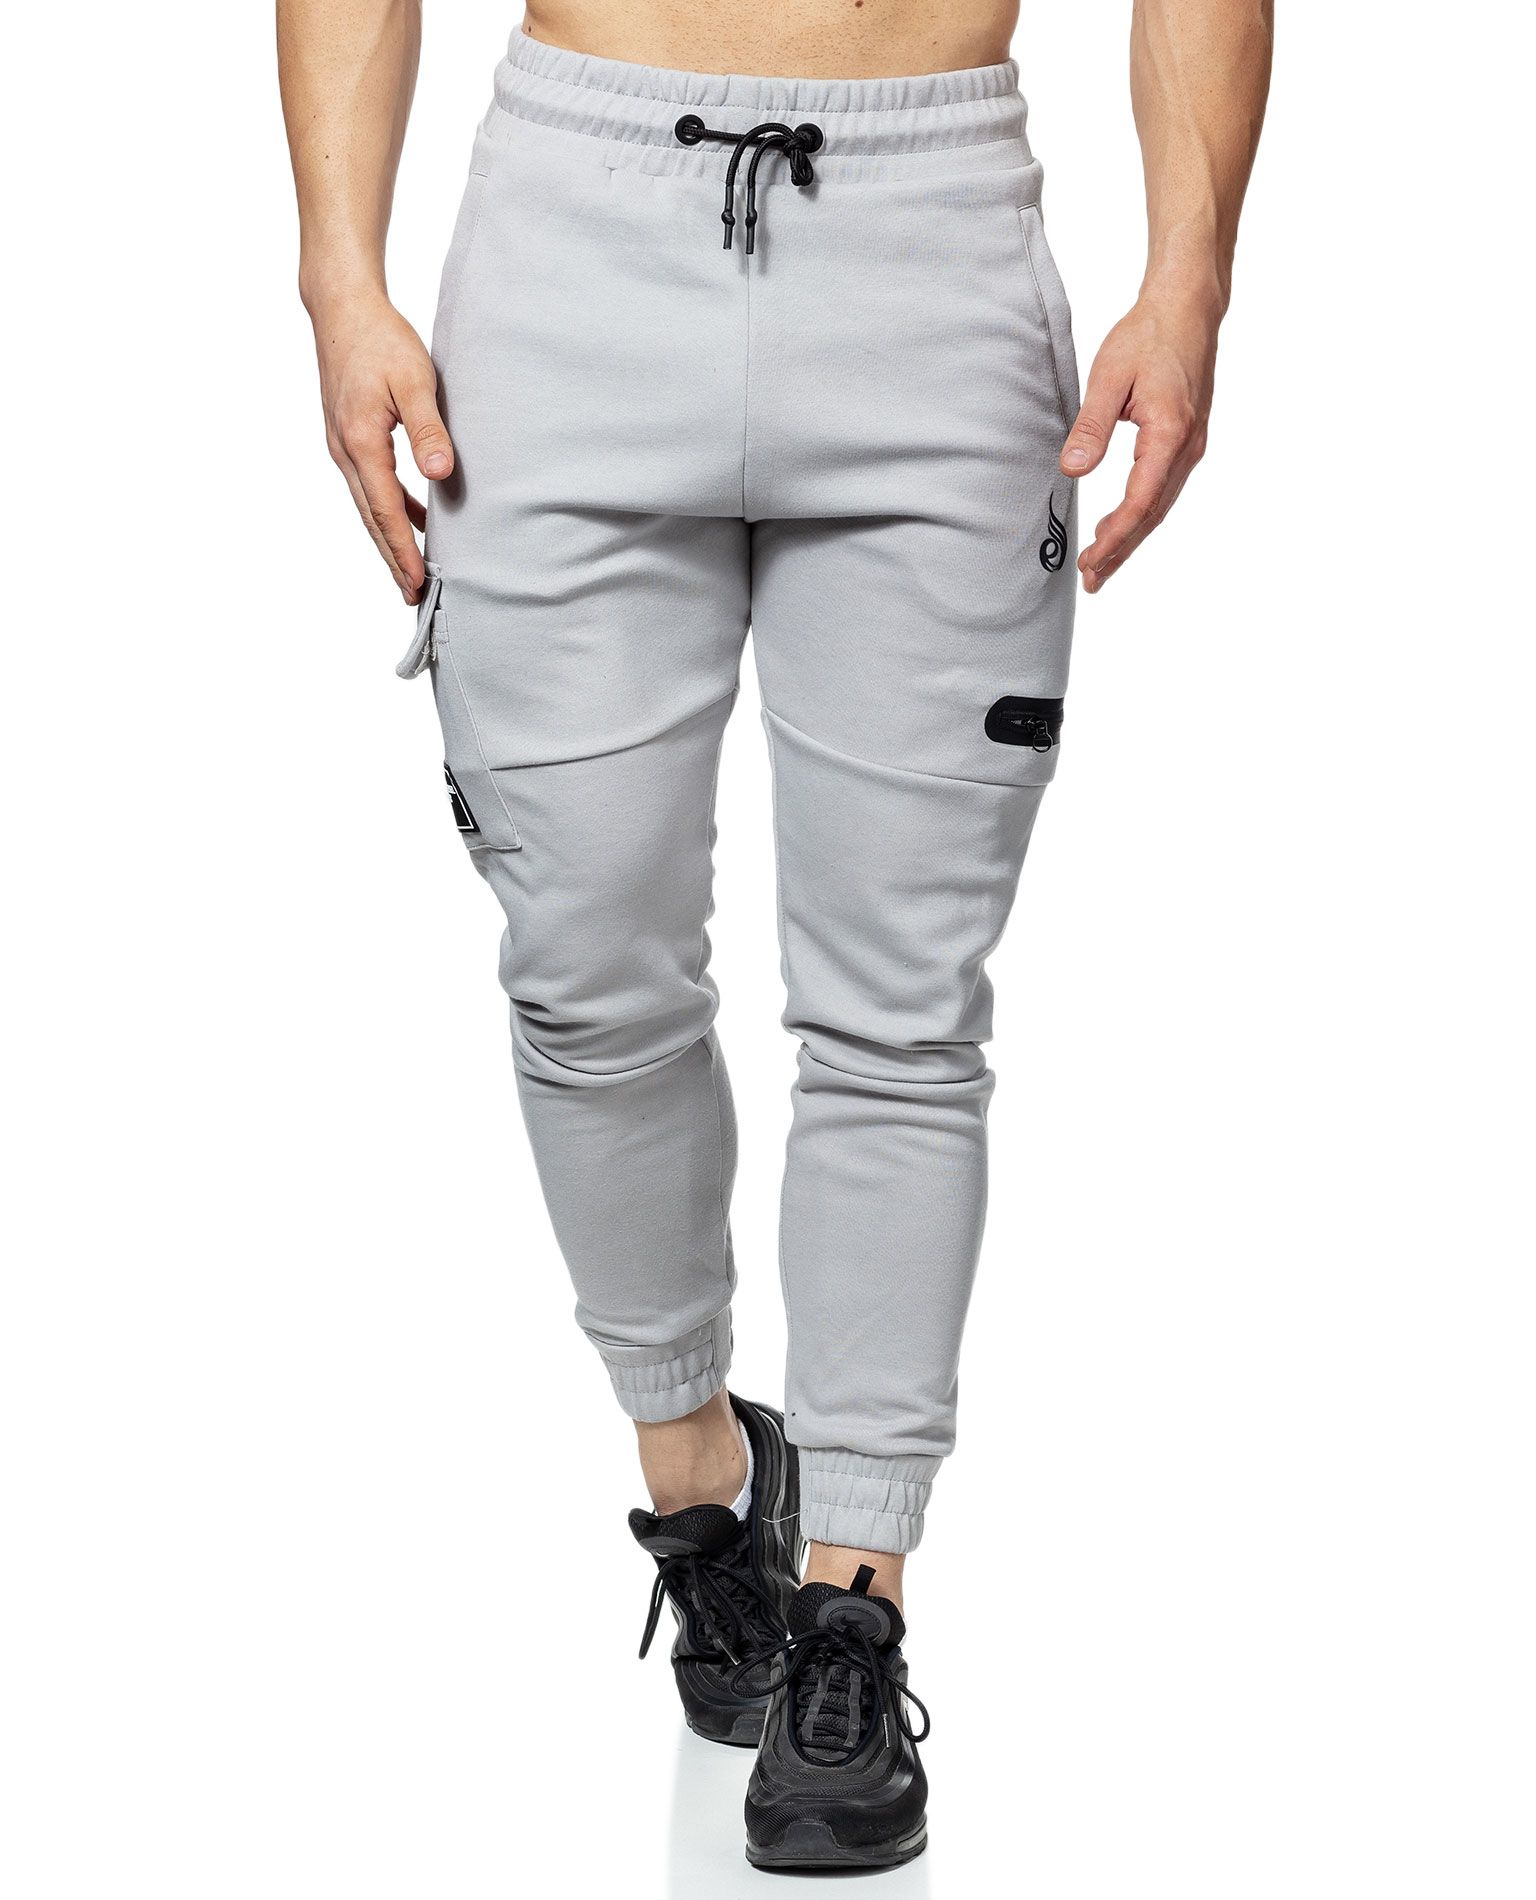 Duty Track Pants Grey Ryderwear - 2341 - Sportswear - Jerone.com